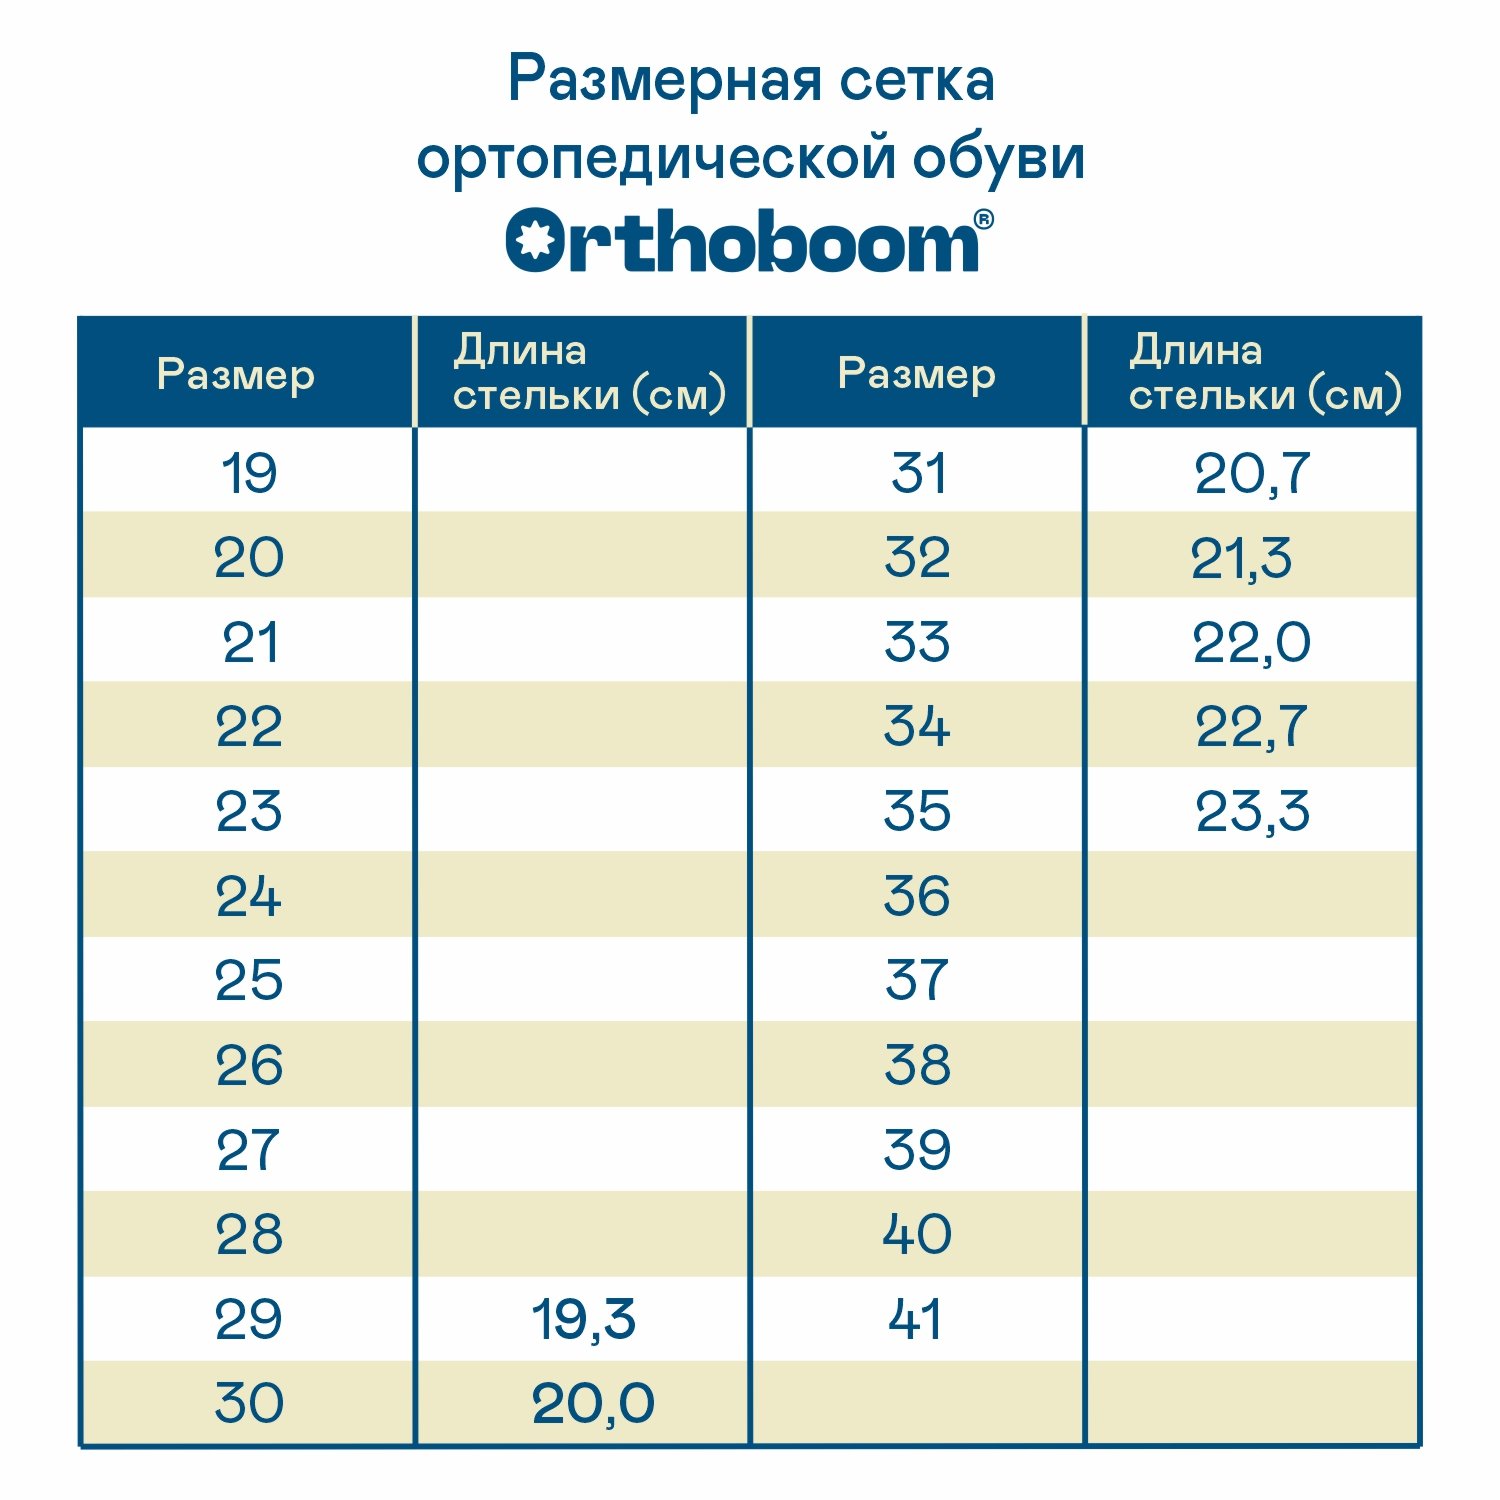 Детские кроссовки ORTHOBOOM 37054-05 антрацитово-серый с салатовым